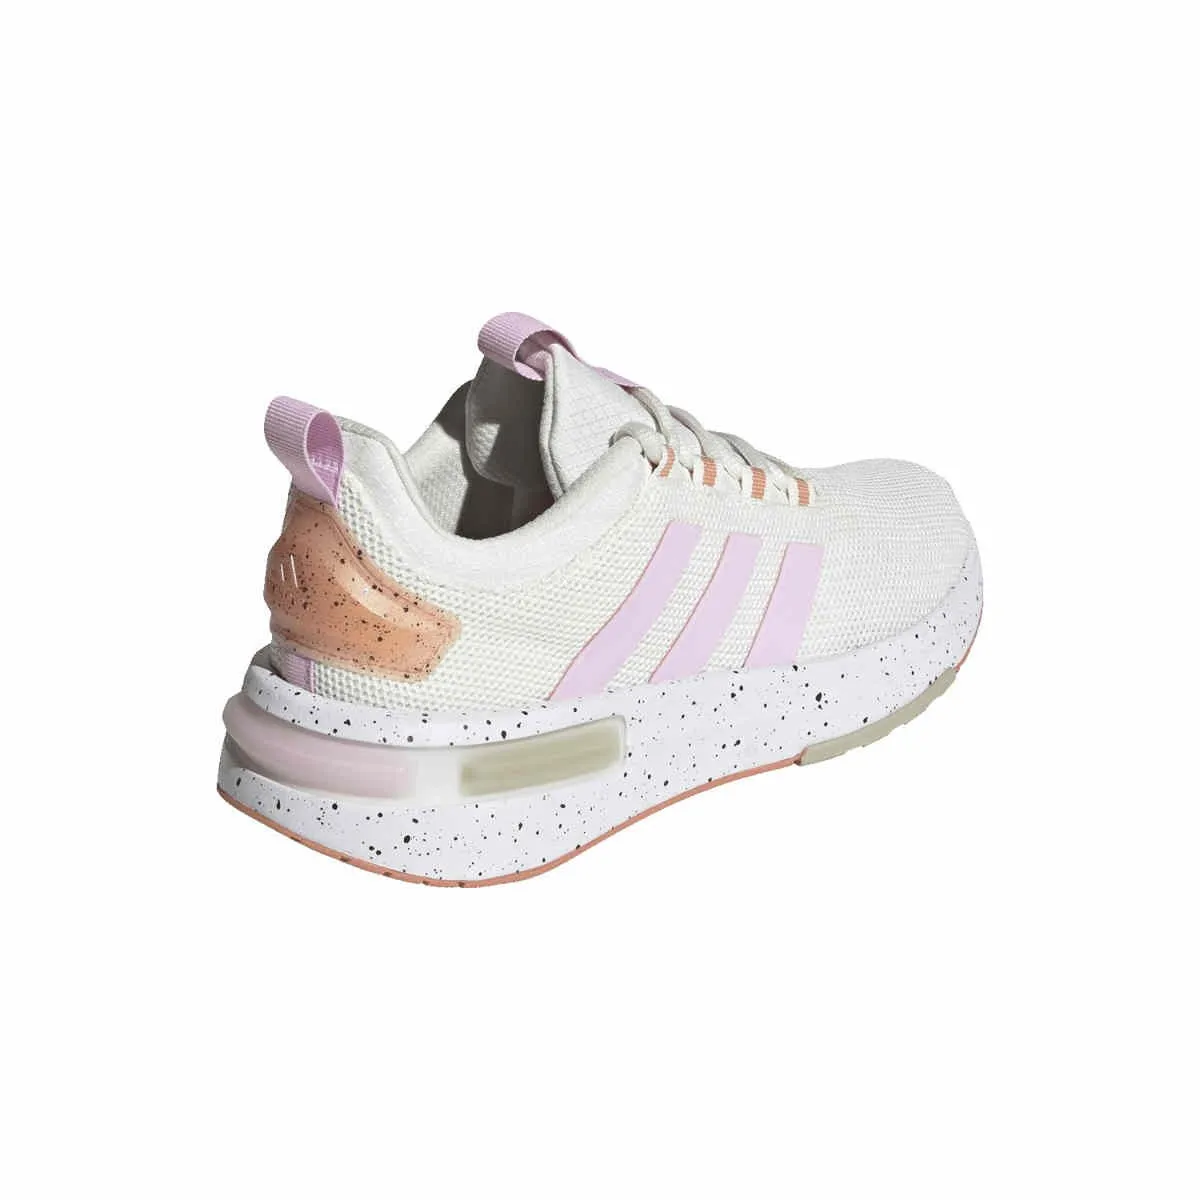 Chaussures de sport adidas Racer Femmes blanc/rose